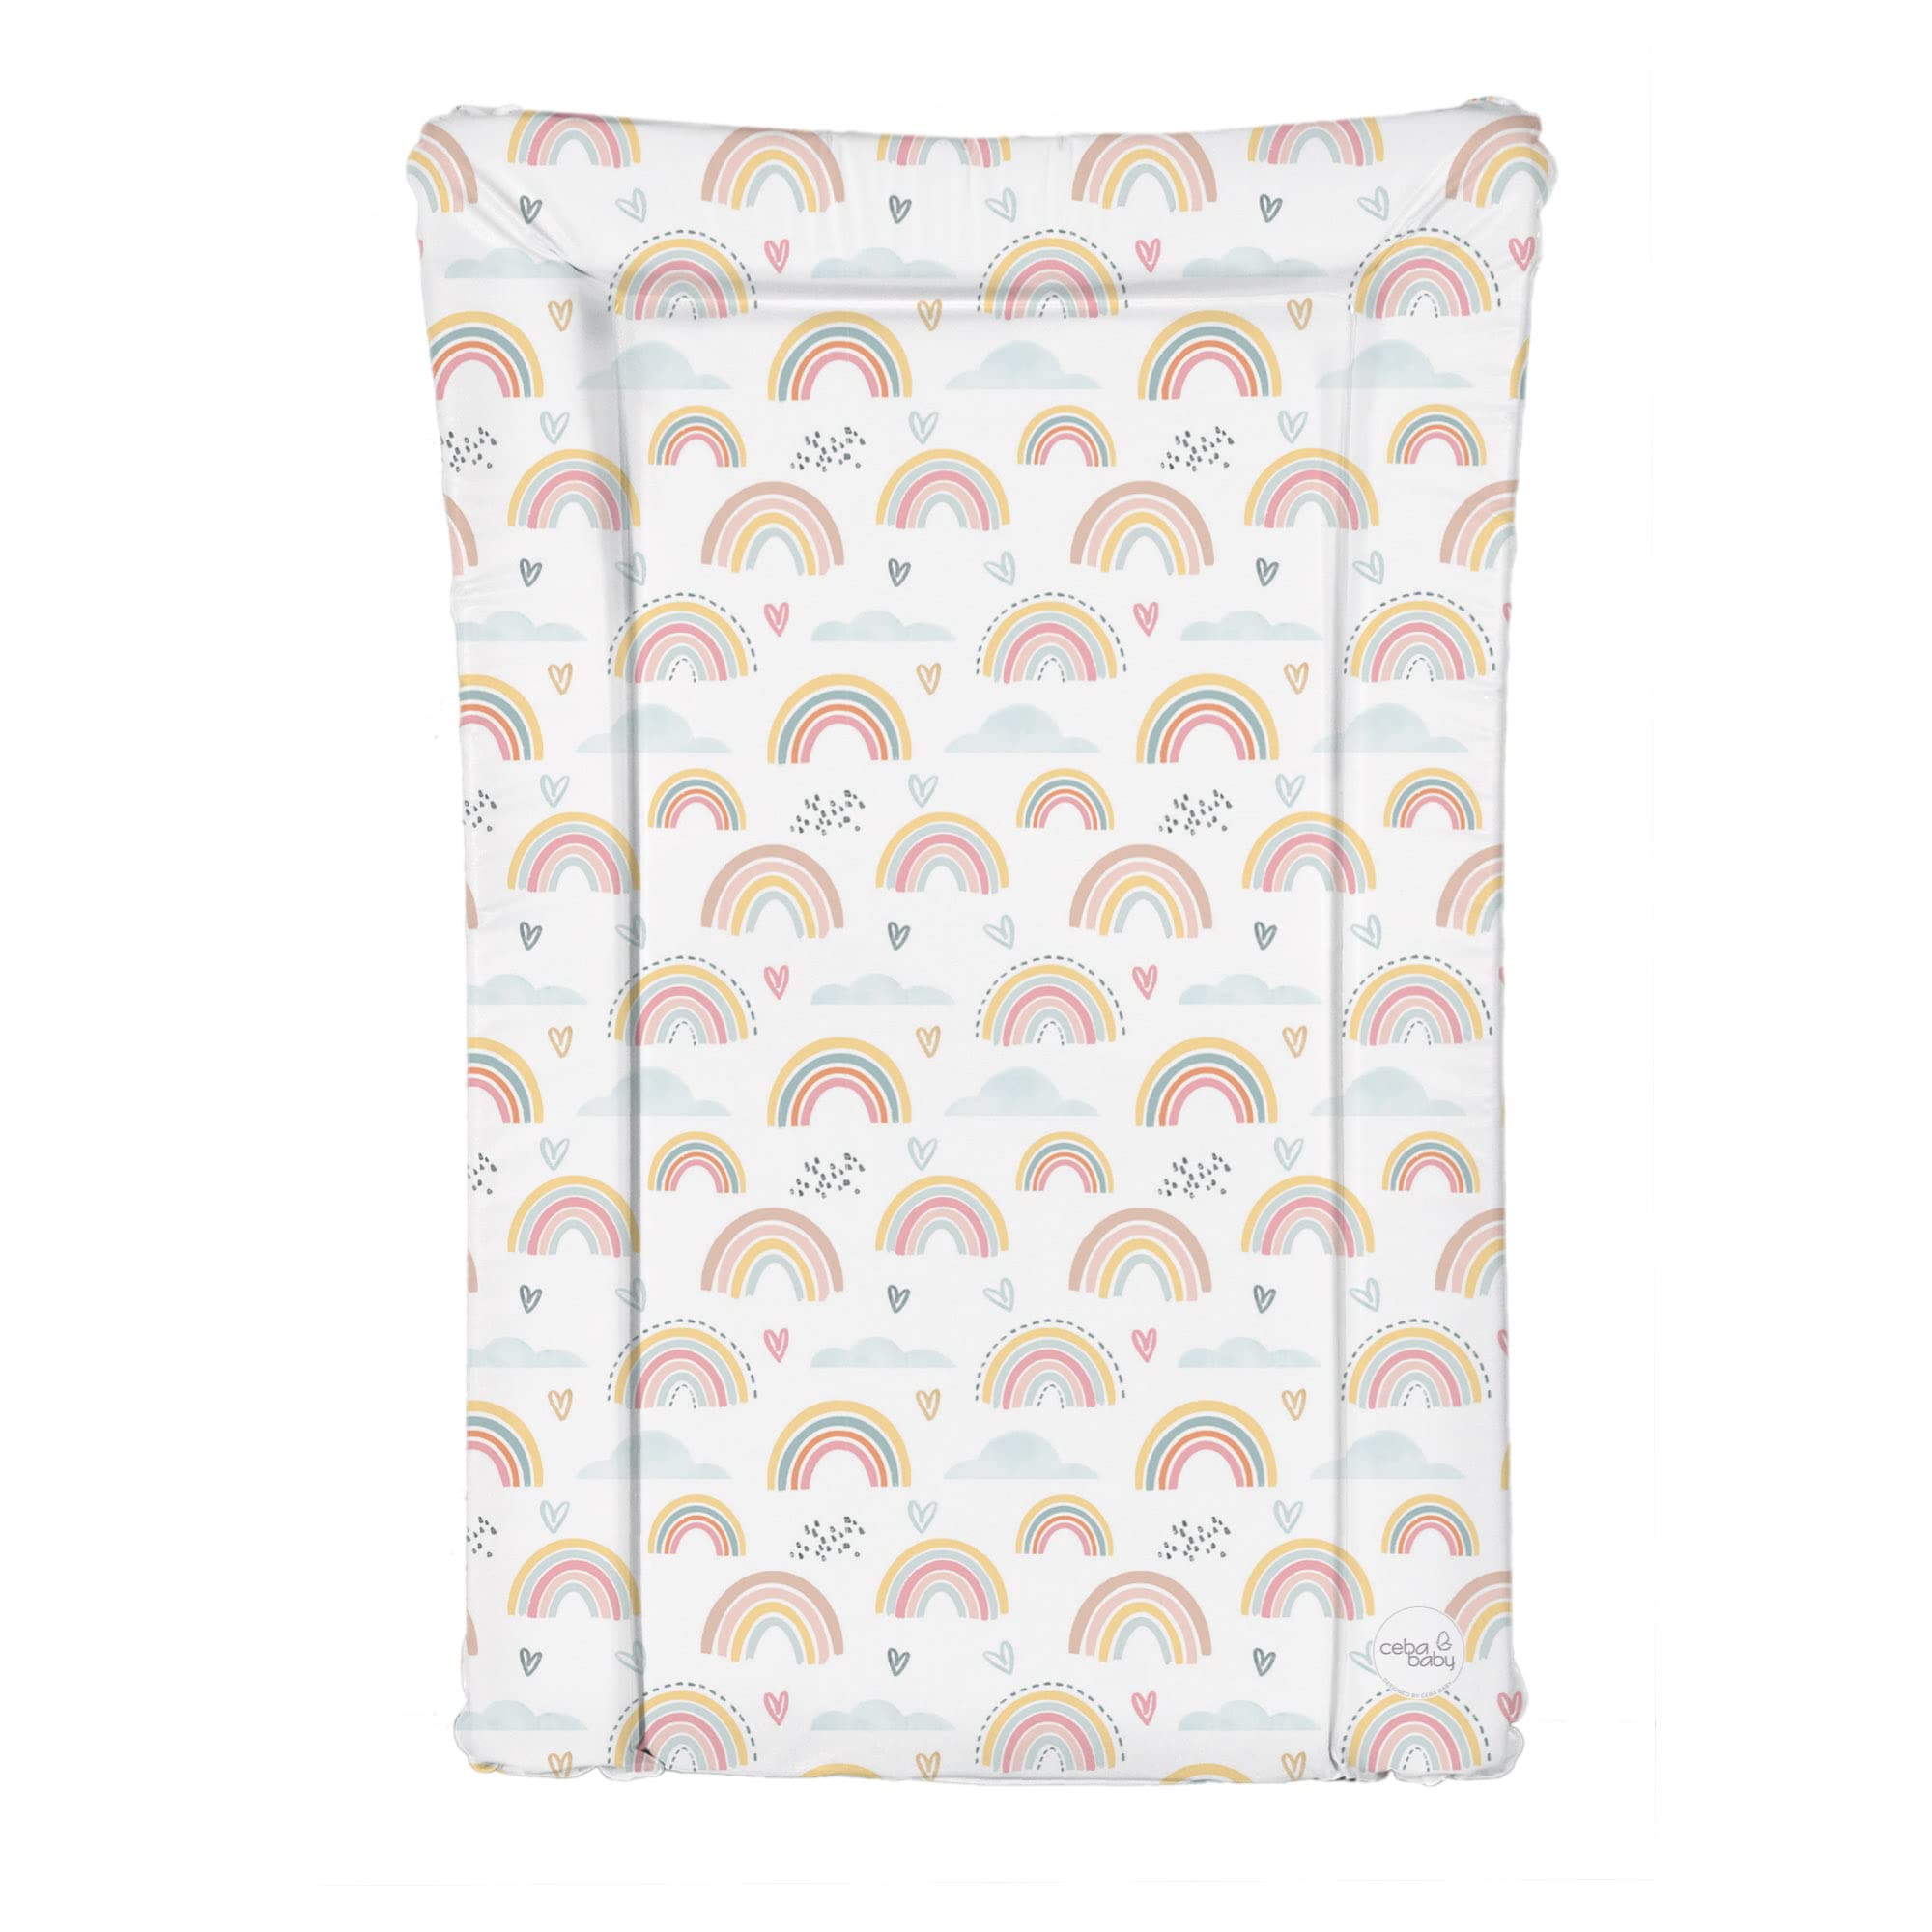 Deluxe Unisex Baby Wickelunterlage mit erhöhten Kanten, wasserdicht, einzigartiges Regenbogen-Design